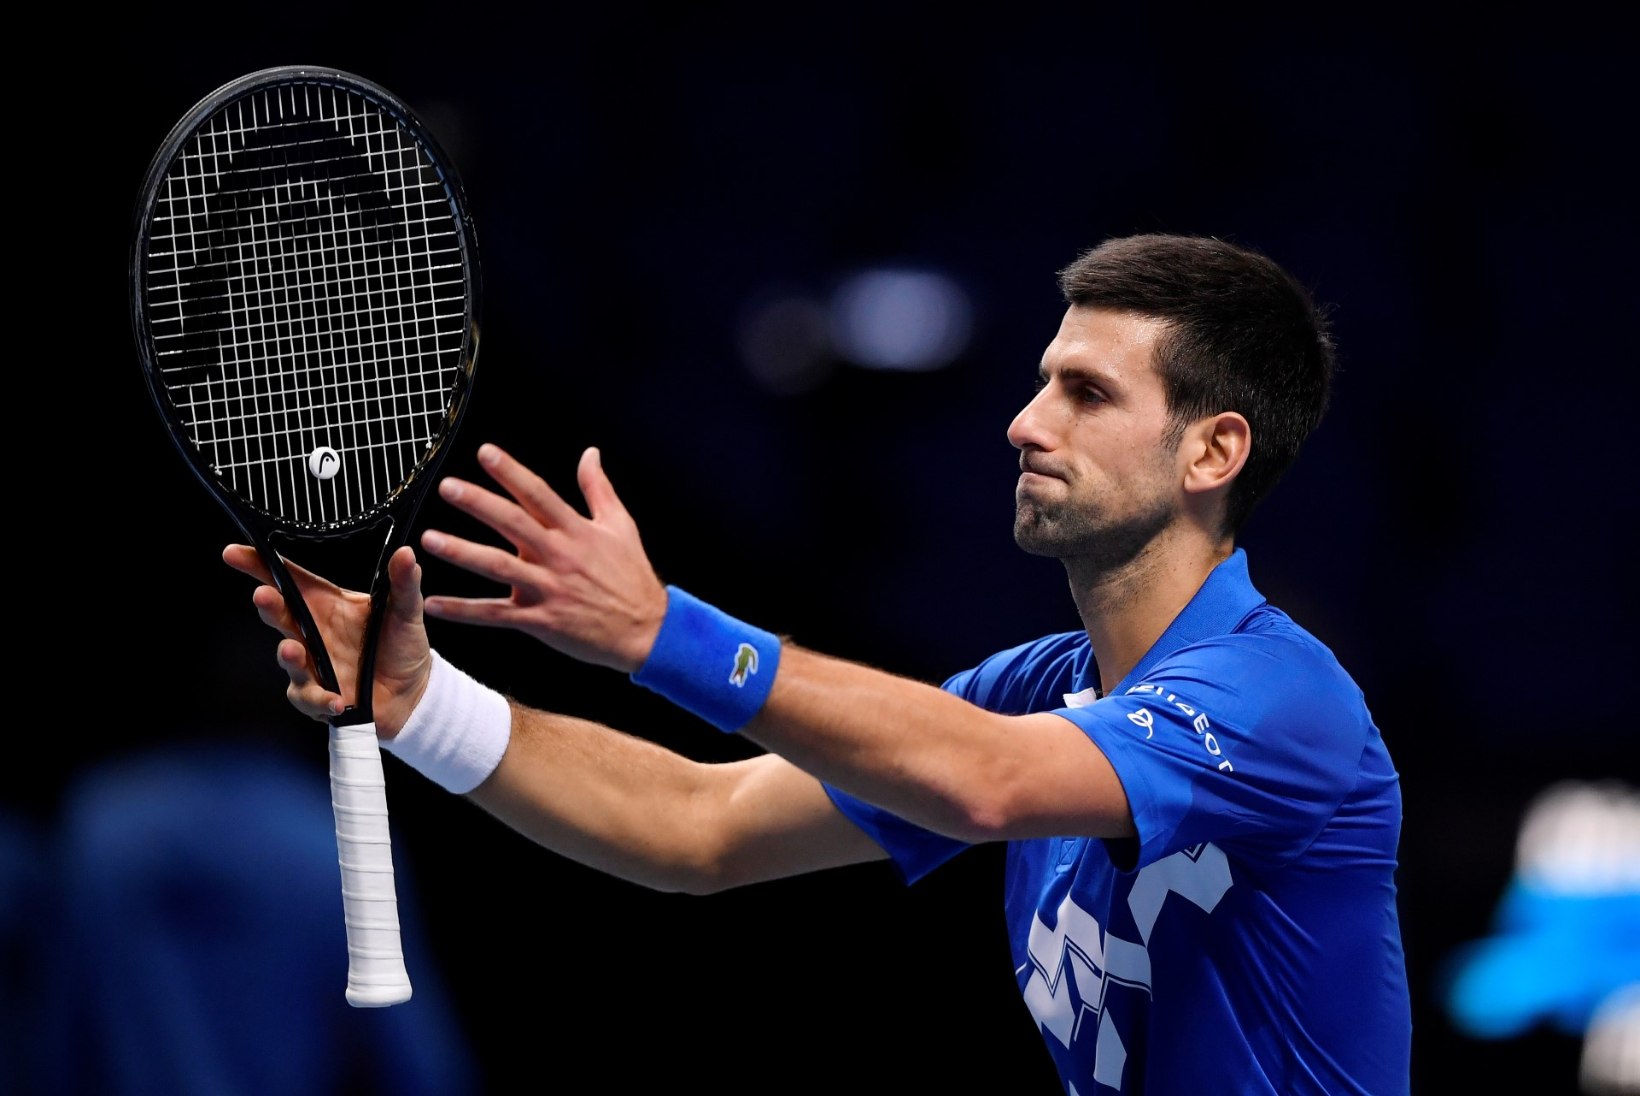 Djokovic sai aastalõputurniiril kindla võidu, selgusid poolfinalistid